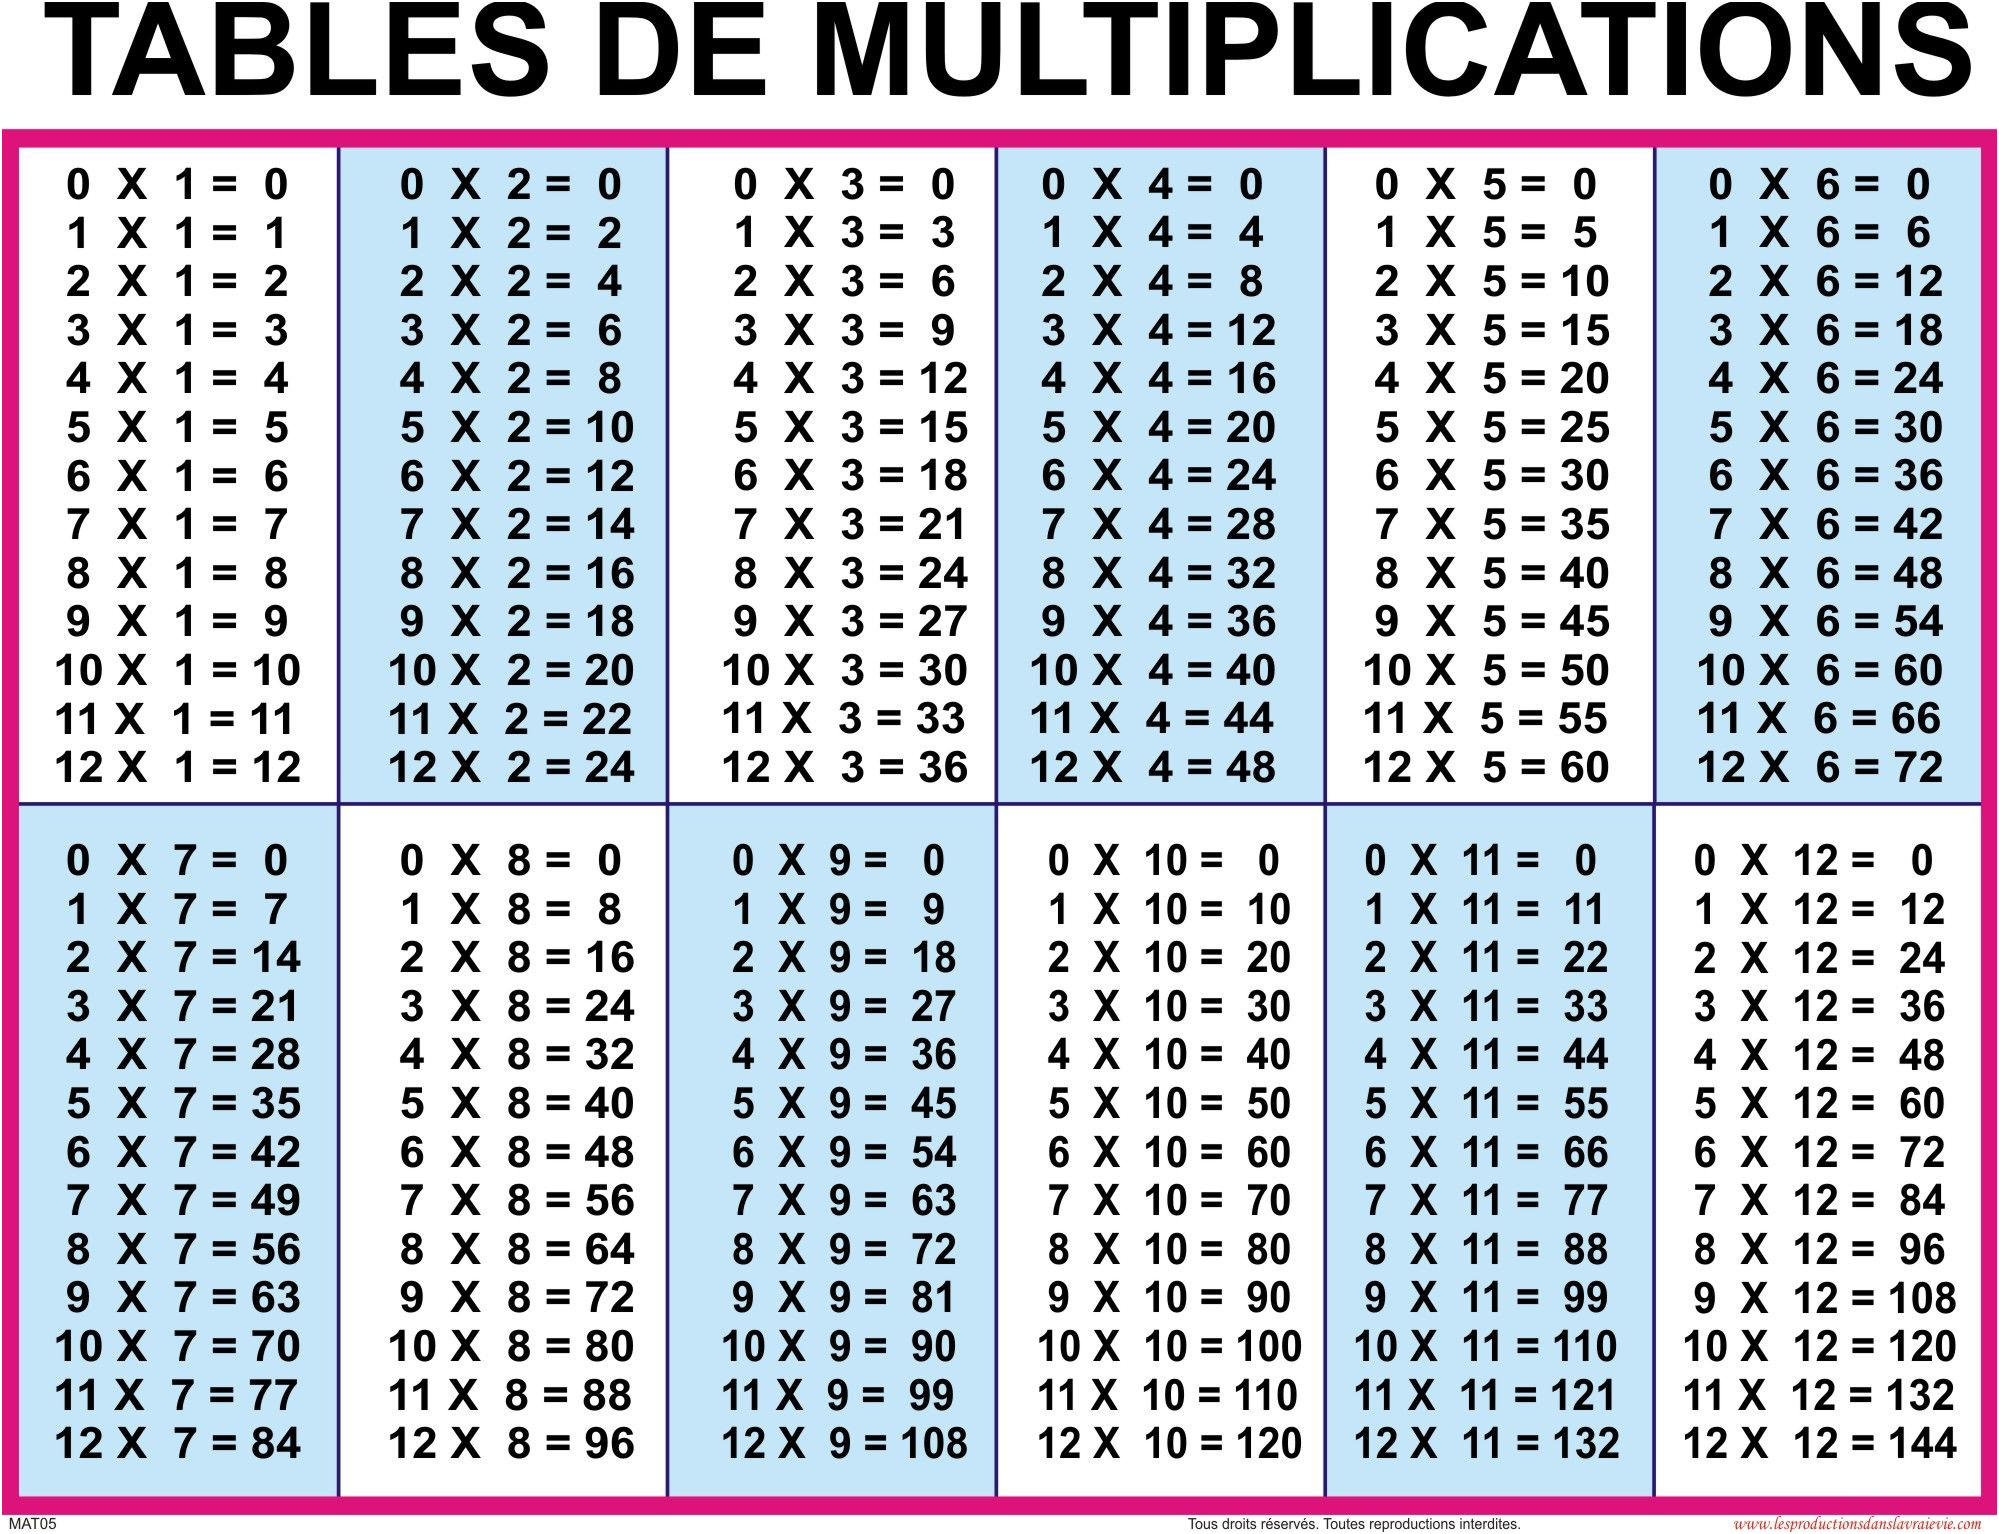 20 умножить на 12 7. Таблица умножения (1-20). Таблица умножения на 2 3 4. Таблица умножения Table. Таблица умножения от 1 до 12.